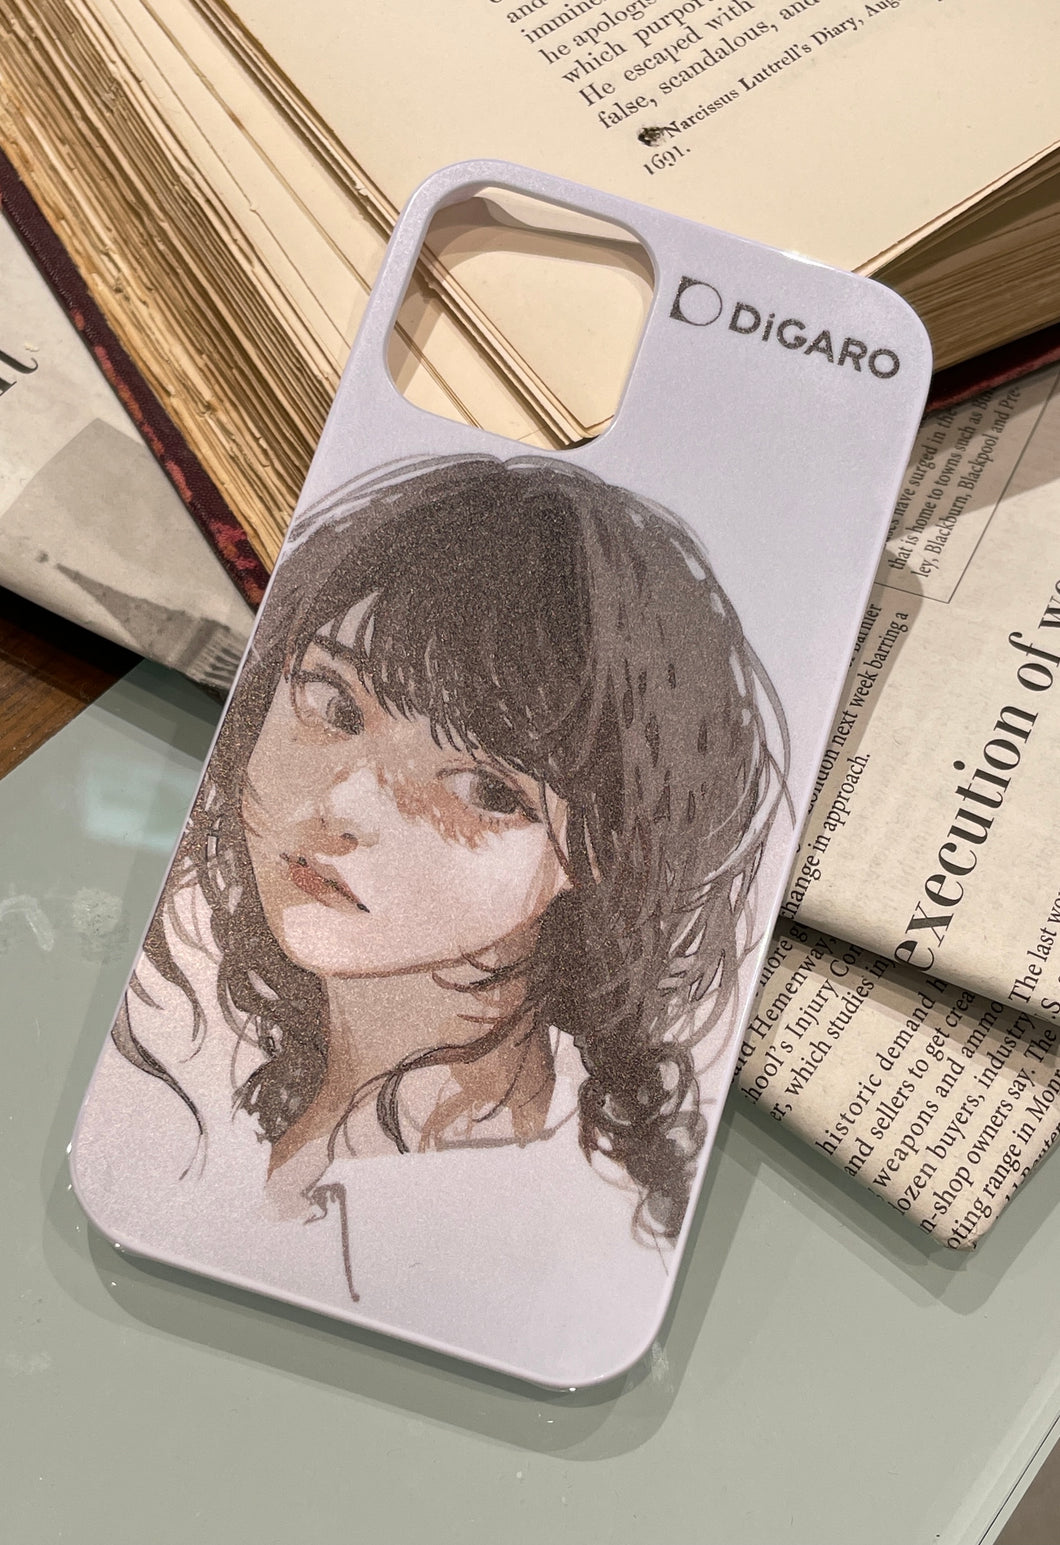 「無題 #1」むめな DiGAROオリジナル限定スマホケース -iPhoneシリーズ-